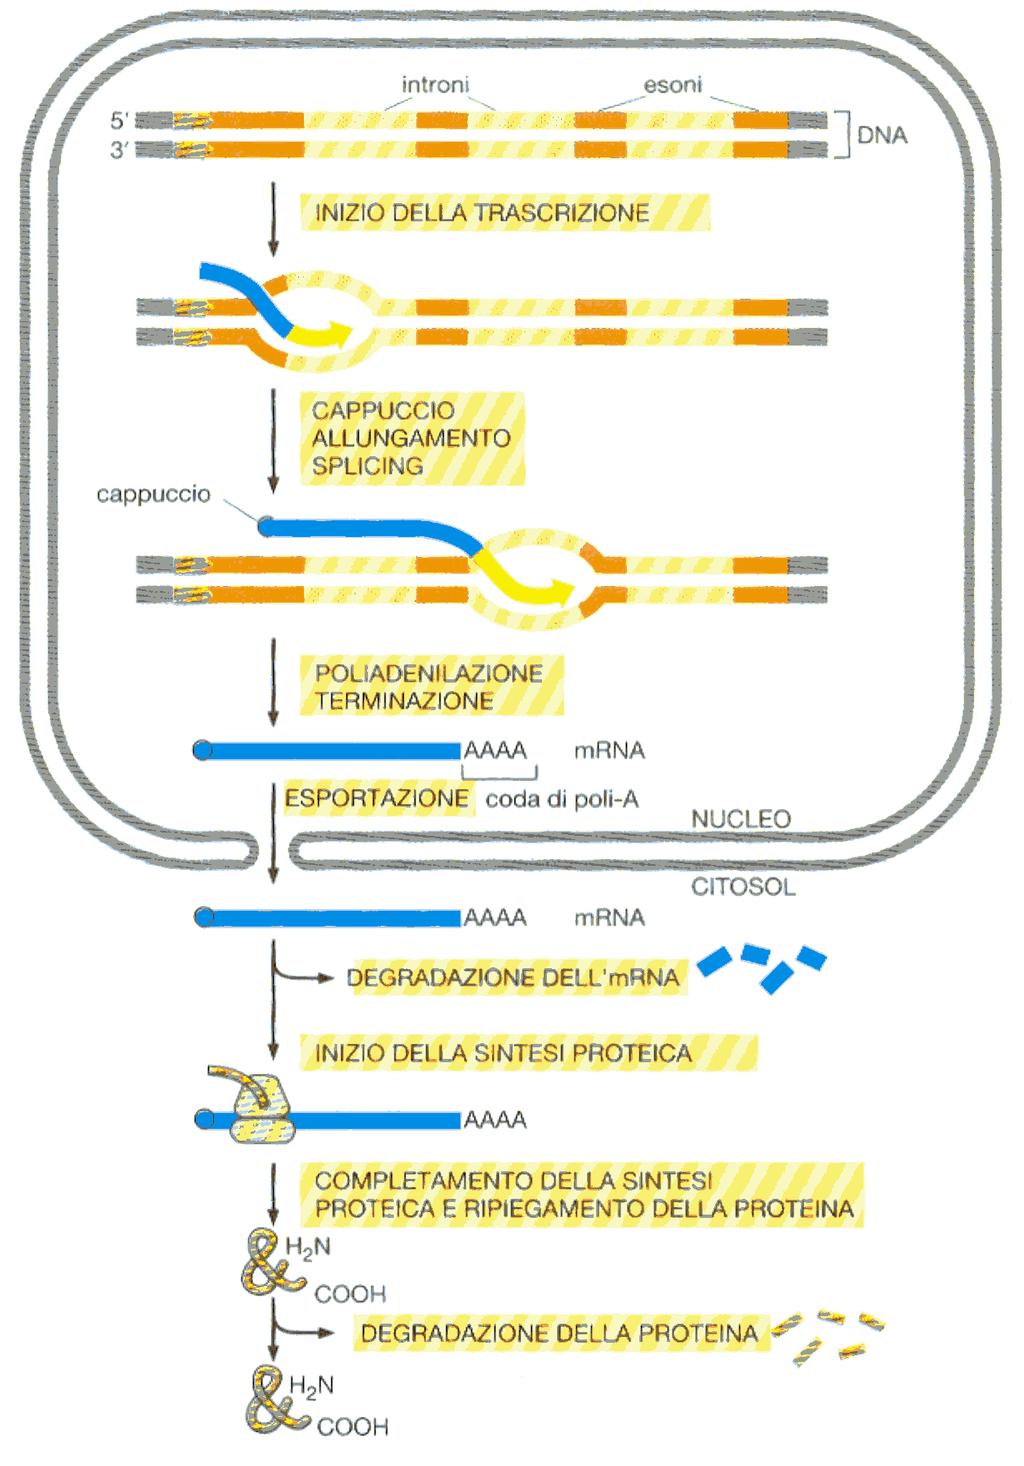 La via proteolitica descritta è in grado di distinguere fra le proteine completate che hanno conformazioni sbagliate e i molti polipeptidi in crescita su ribosomi (oltre ai polipeptidi appena